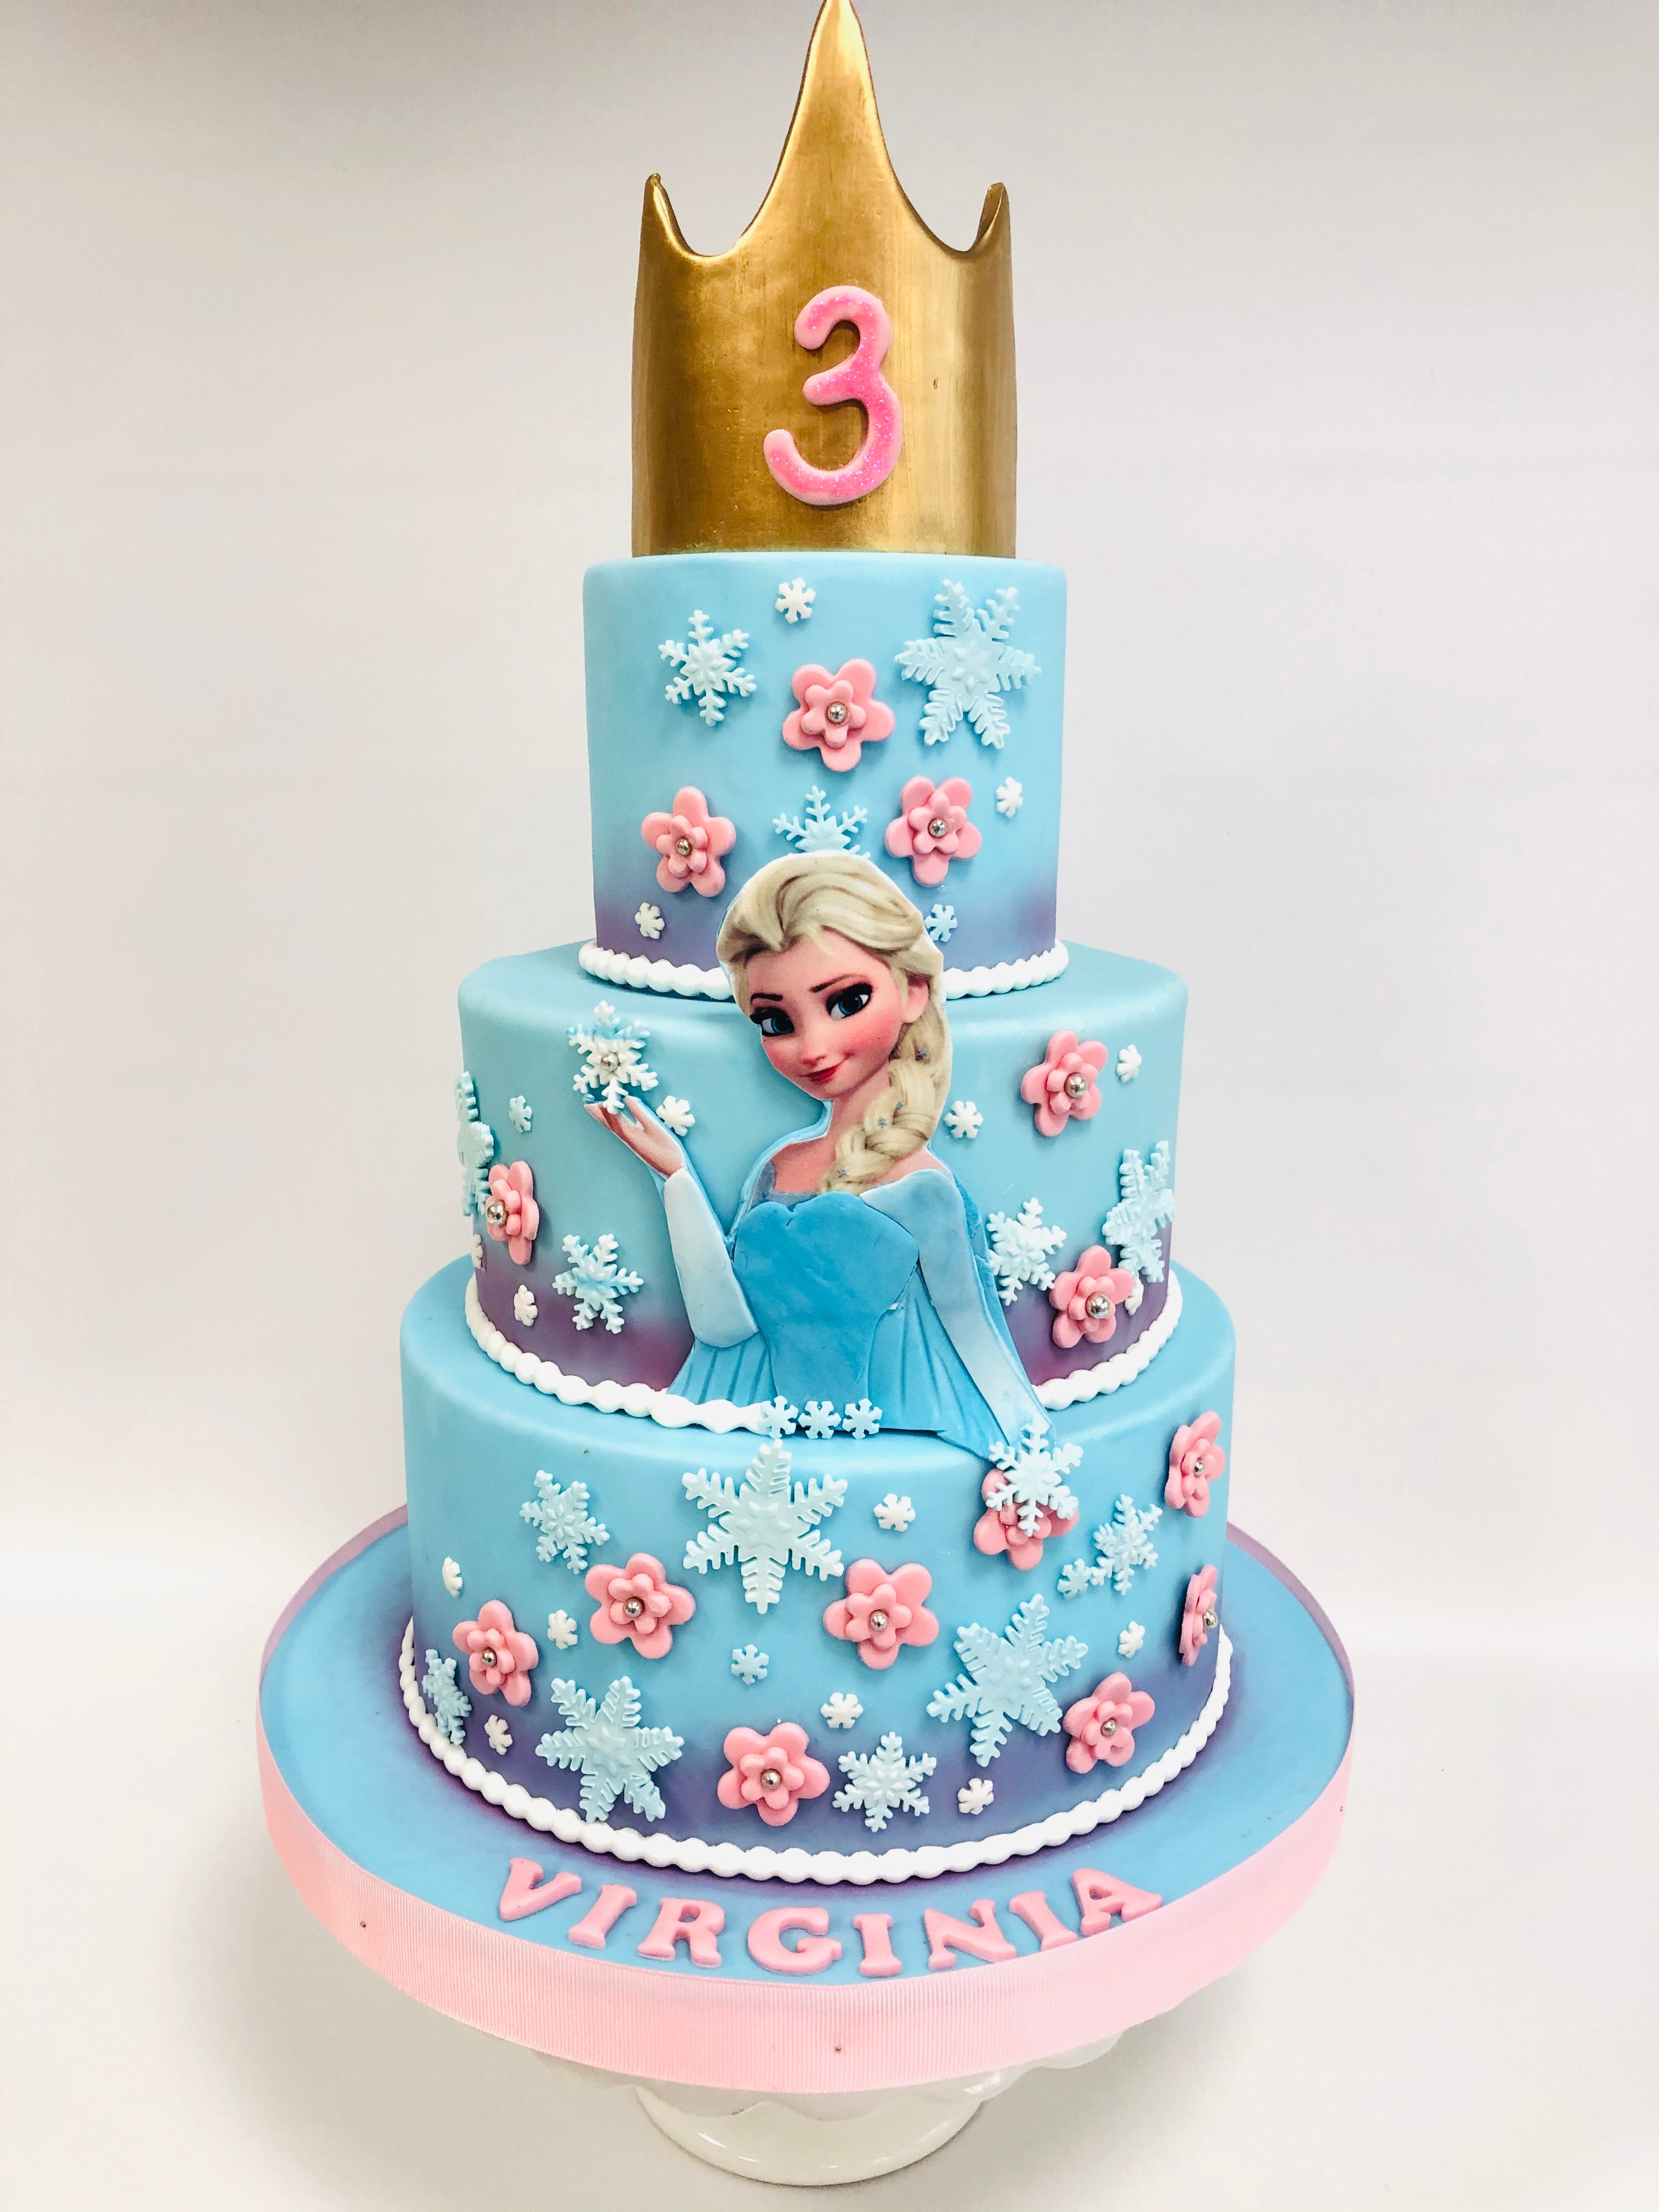 Kit decorazione torta Elsa da Frozen II - 3 unità per 11,50 €